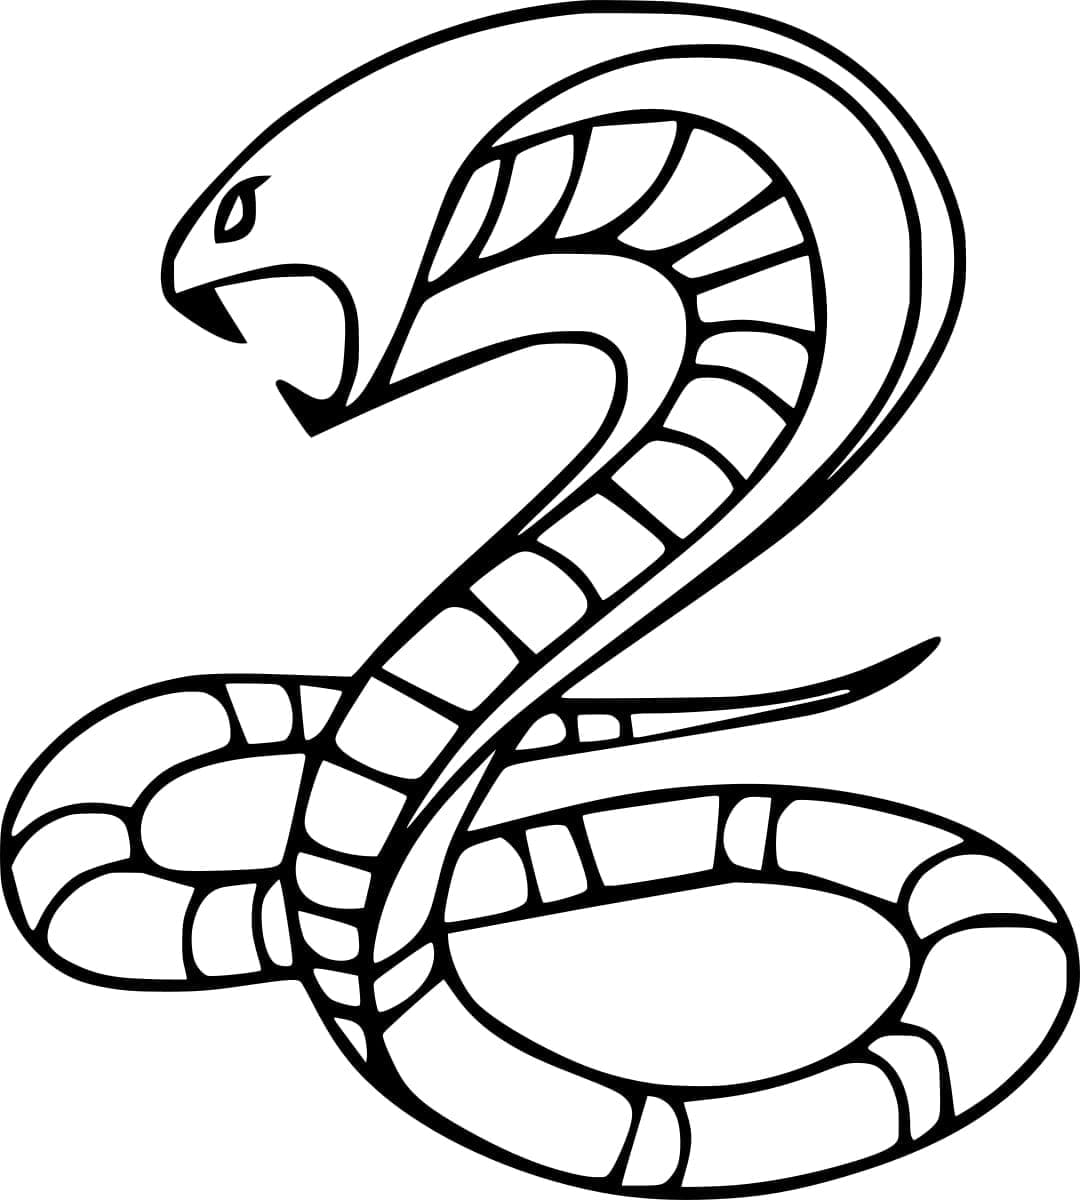 Un Serpent Cobra coloring page